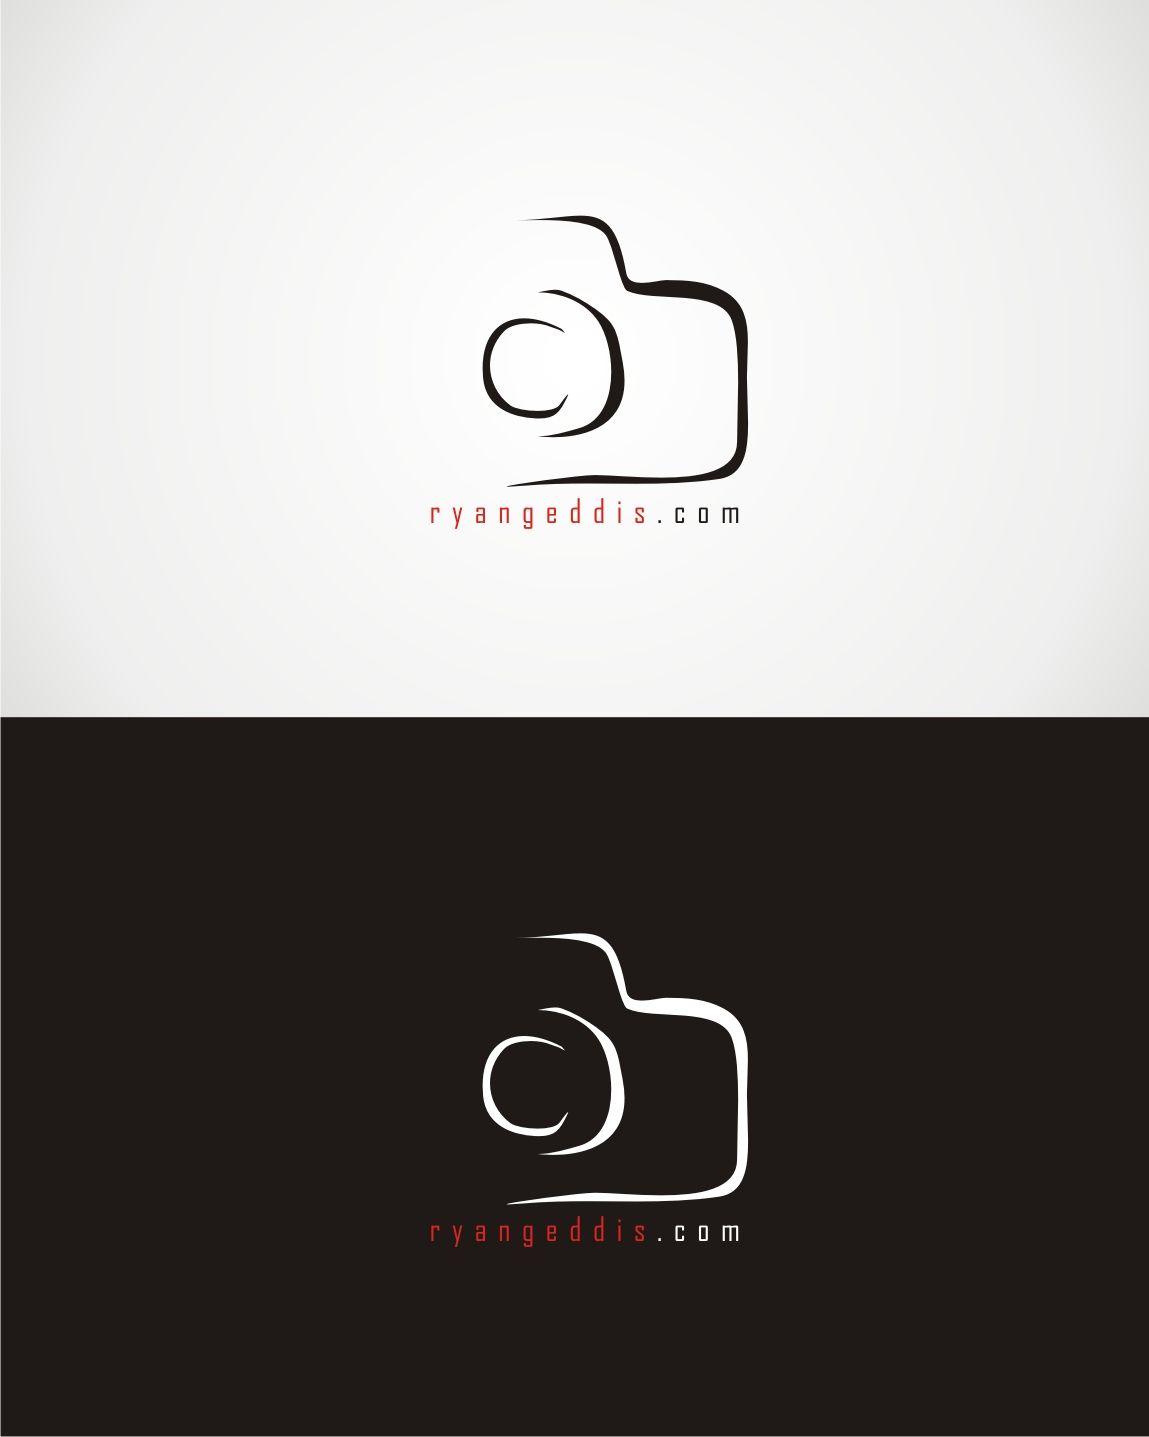 Cameraman Logo - Camera Logo Design for ryangeddis.com by kamiranz | Design #9529865